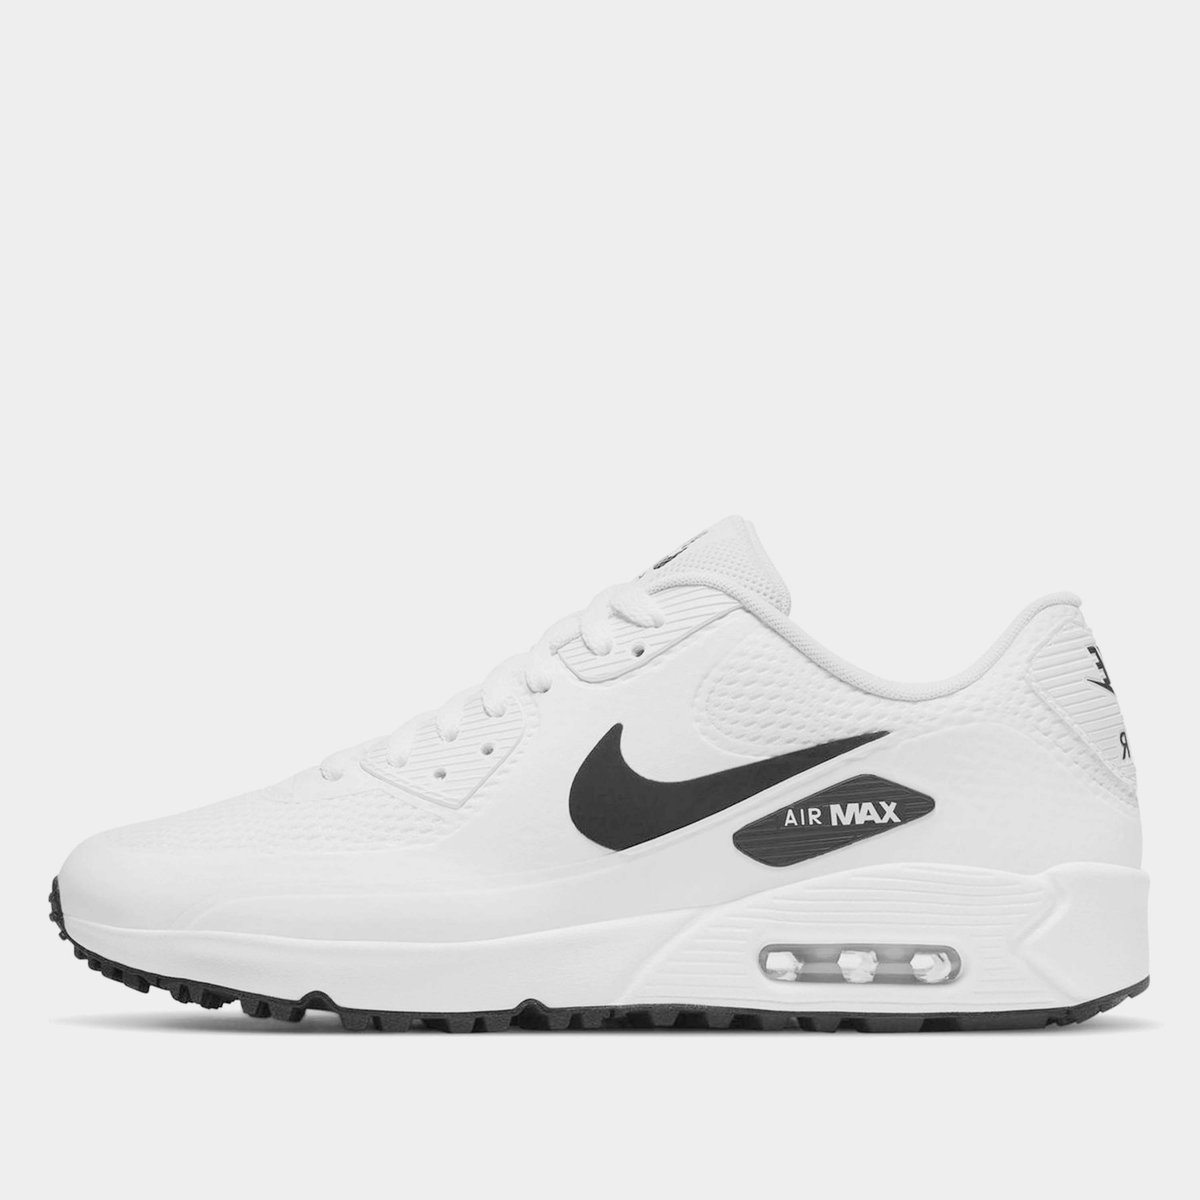 Nike Air Max 90 G Golf Shoe White/Black, £125.00